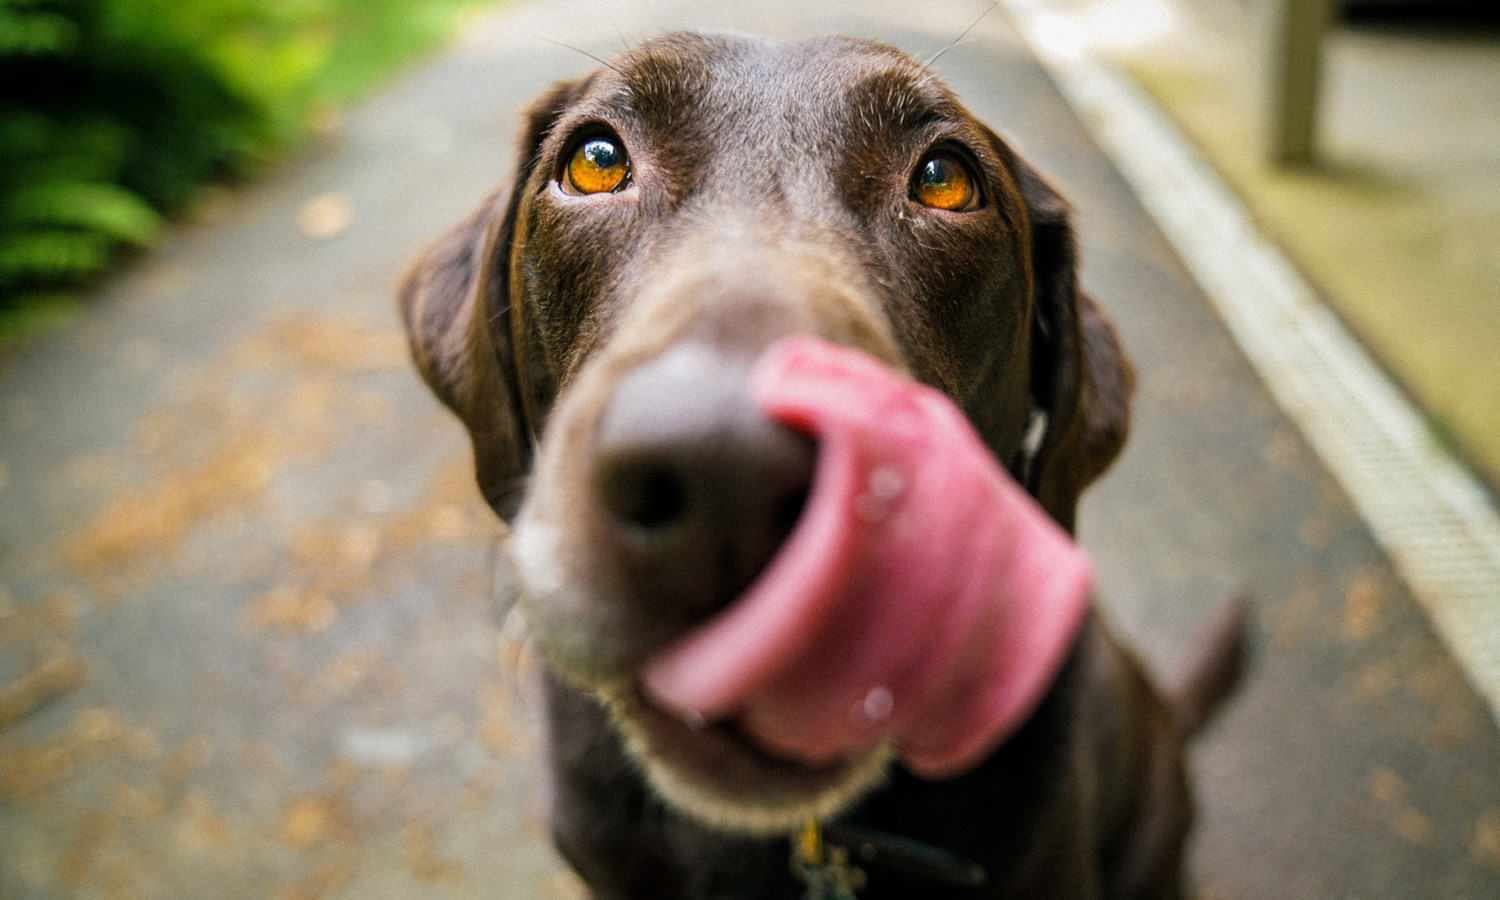 what happens if a dog eats human feces